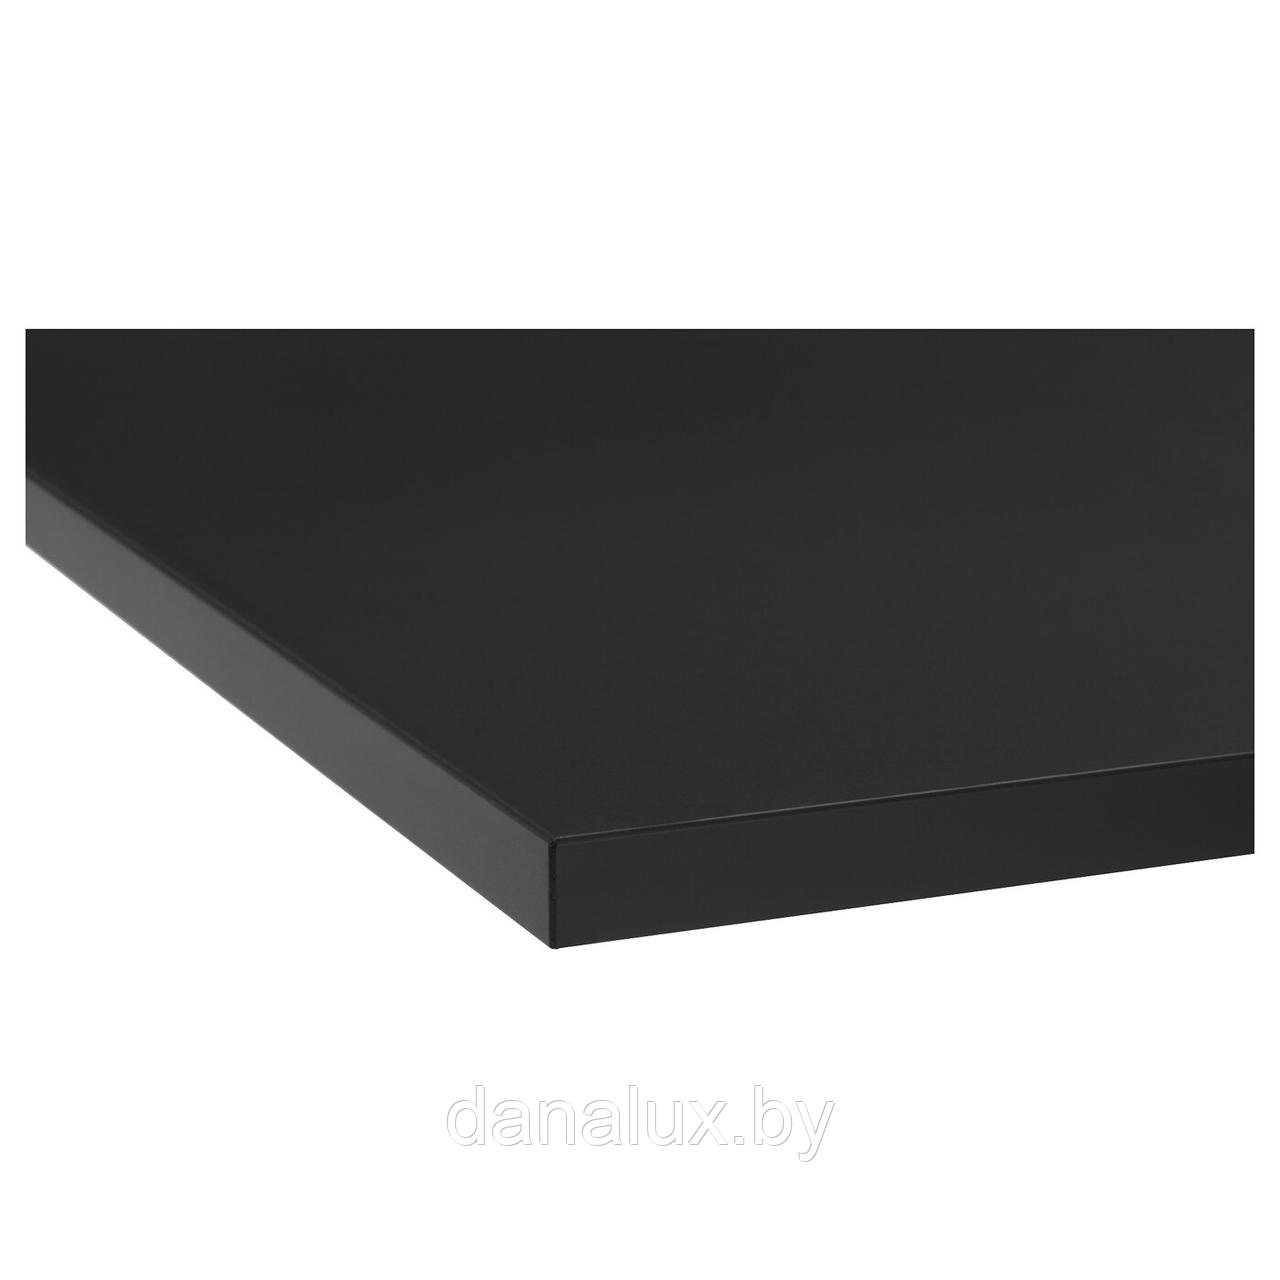 Столешница Дана Топ постформинг цвет черный 50 см + влагостойкий лак